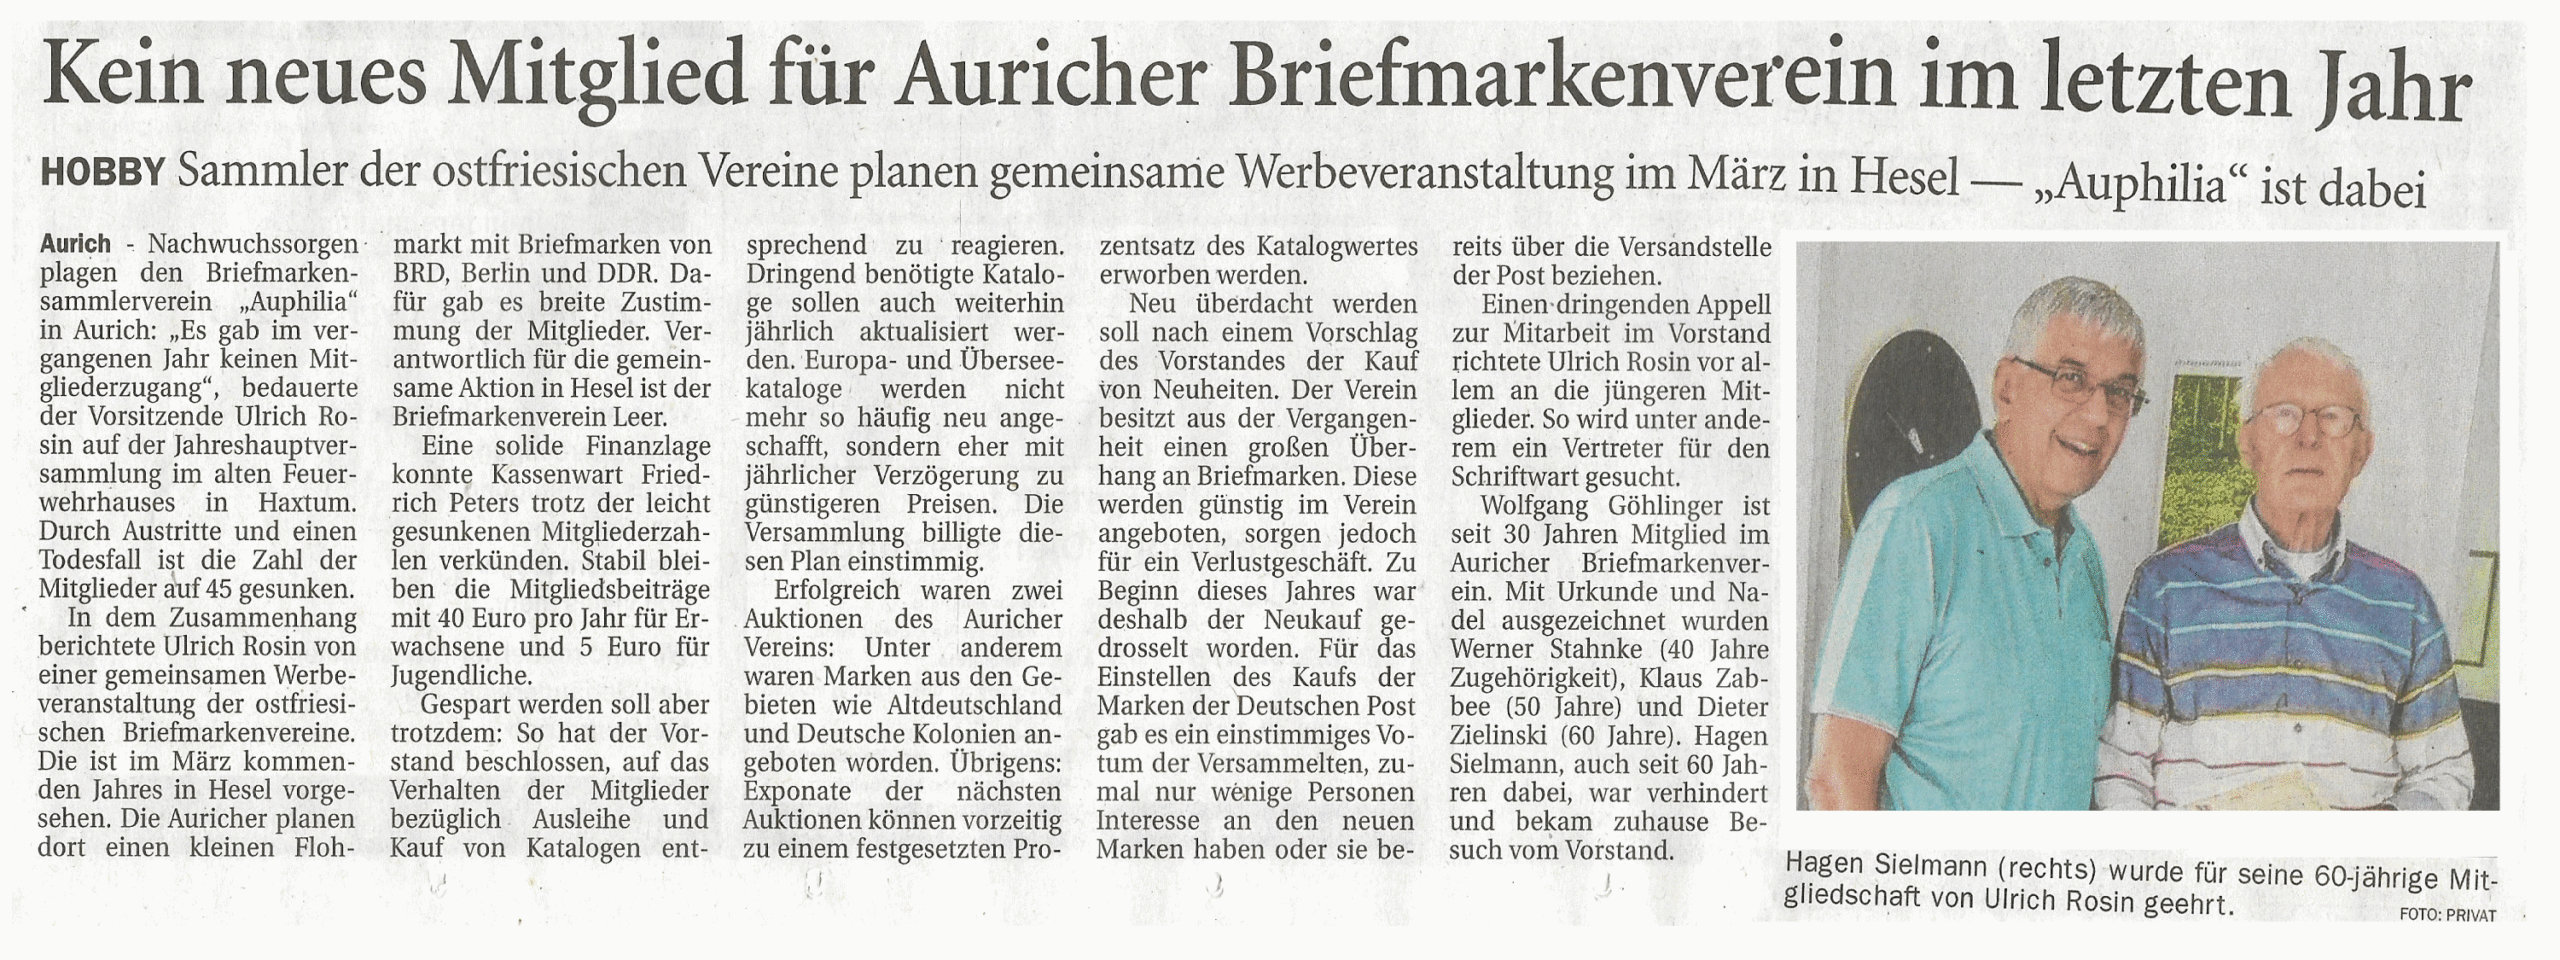 Ostfriesische Zeitung vom 1.7.2022